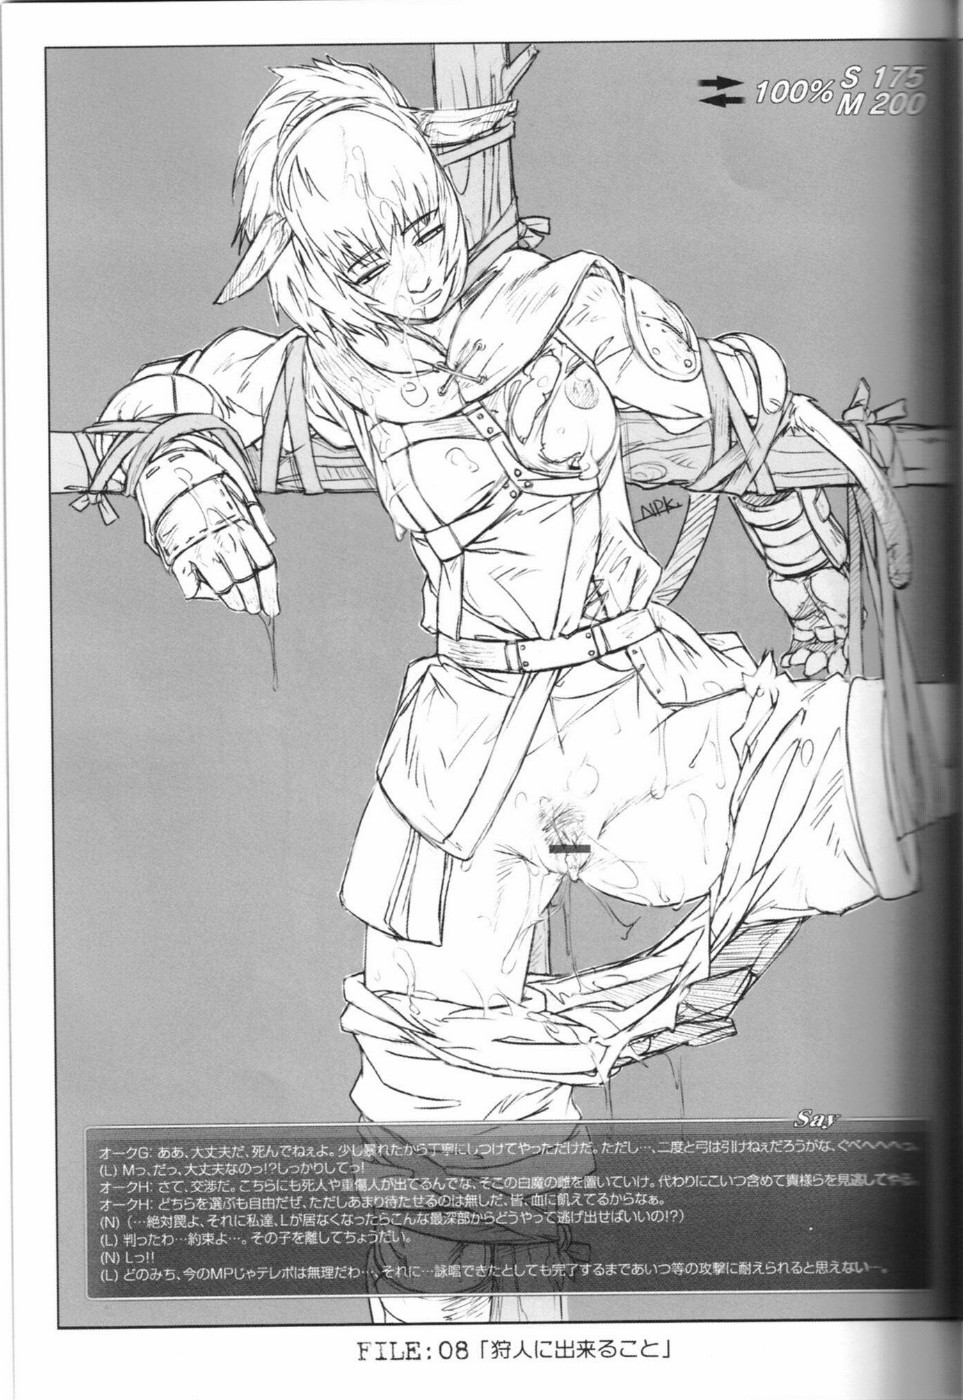 (C67) [NP Virus Jouryuusho (N-P-KATOU)] Mithman Report FILE:00-FILE:15 (Final Fantasy XI) page 12 full